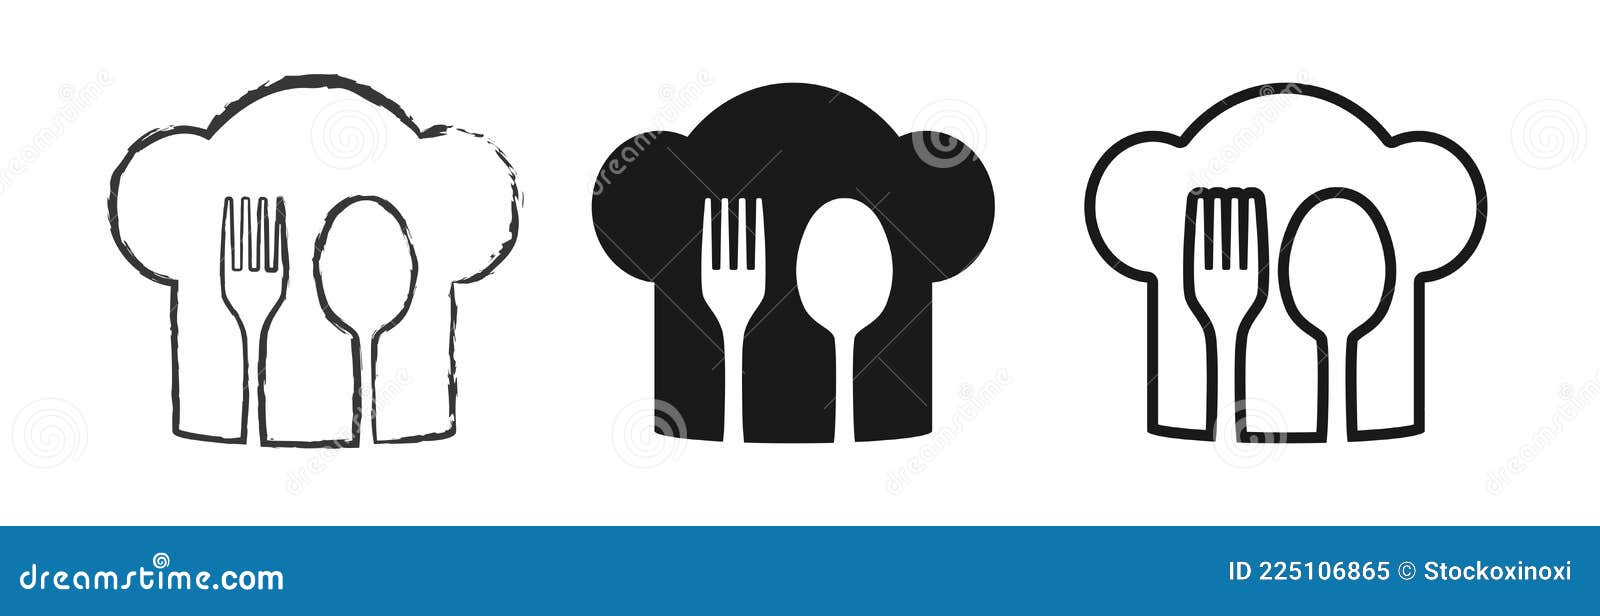 Logotipo Do Restaurante Alimentar Espanhol. Símbolo De Bandeira De Espanha  Com Garfo De Colher E ícones De Faca. Logótipo Premium Ilustração do Vetor  - Ilustração de cozinhar, espanha: 228322857